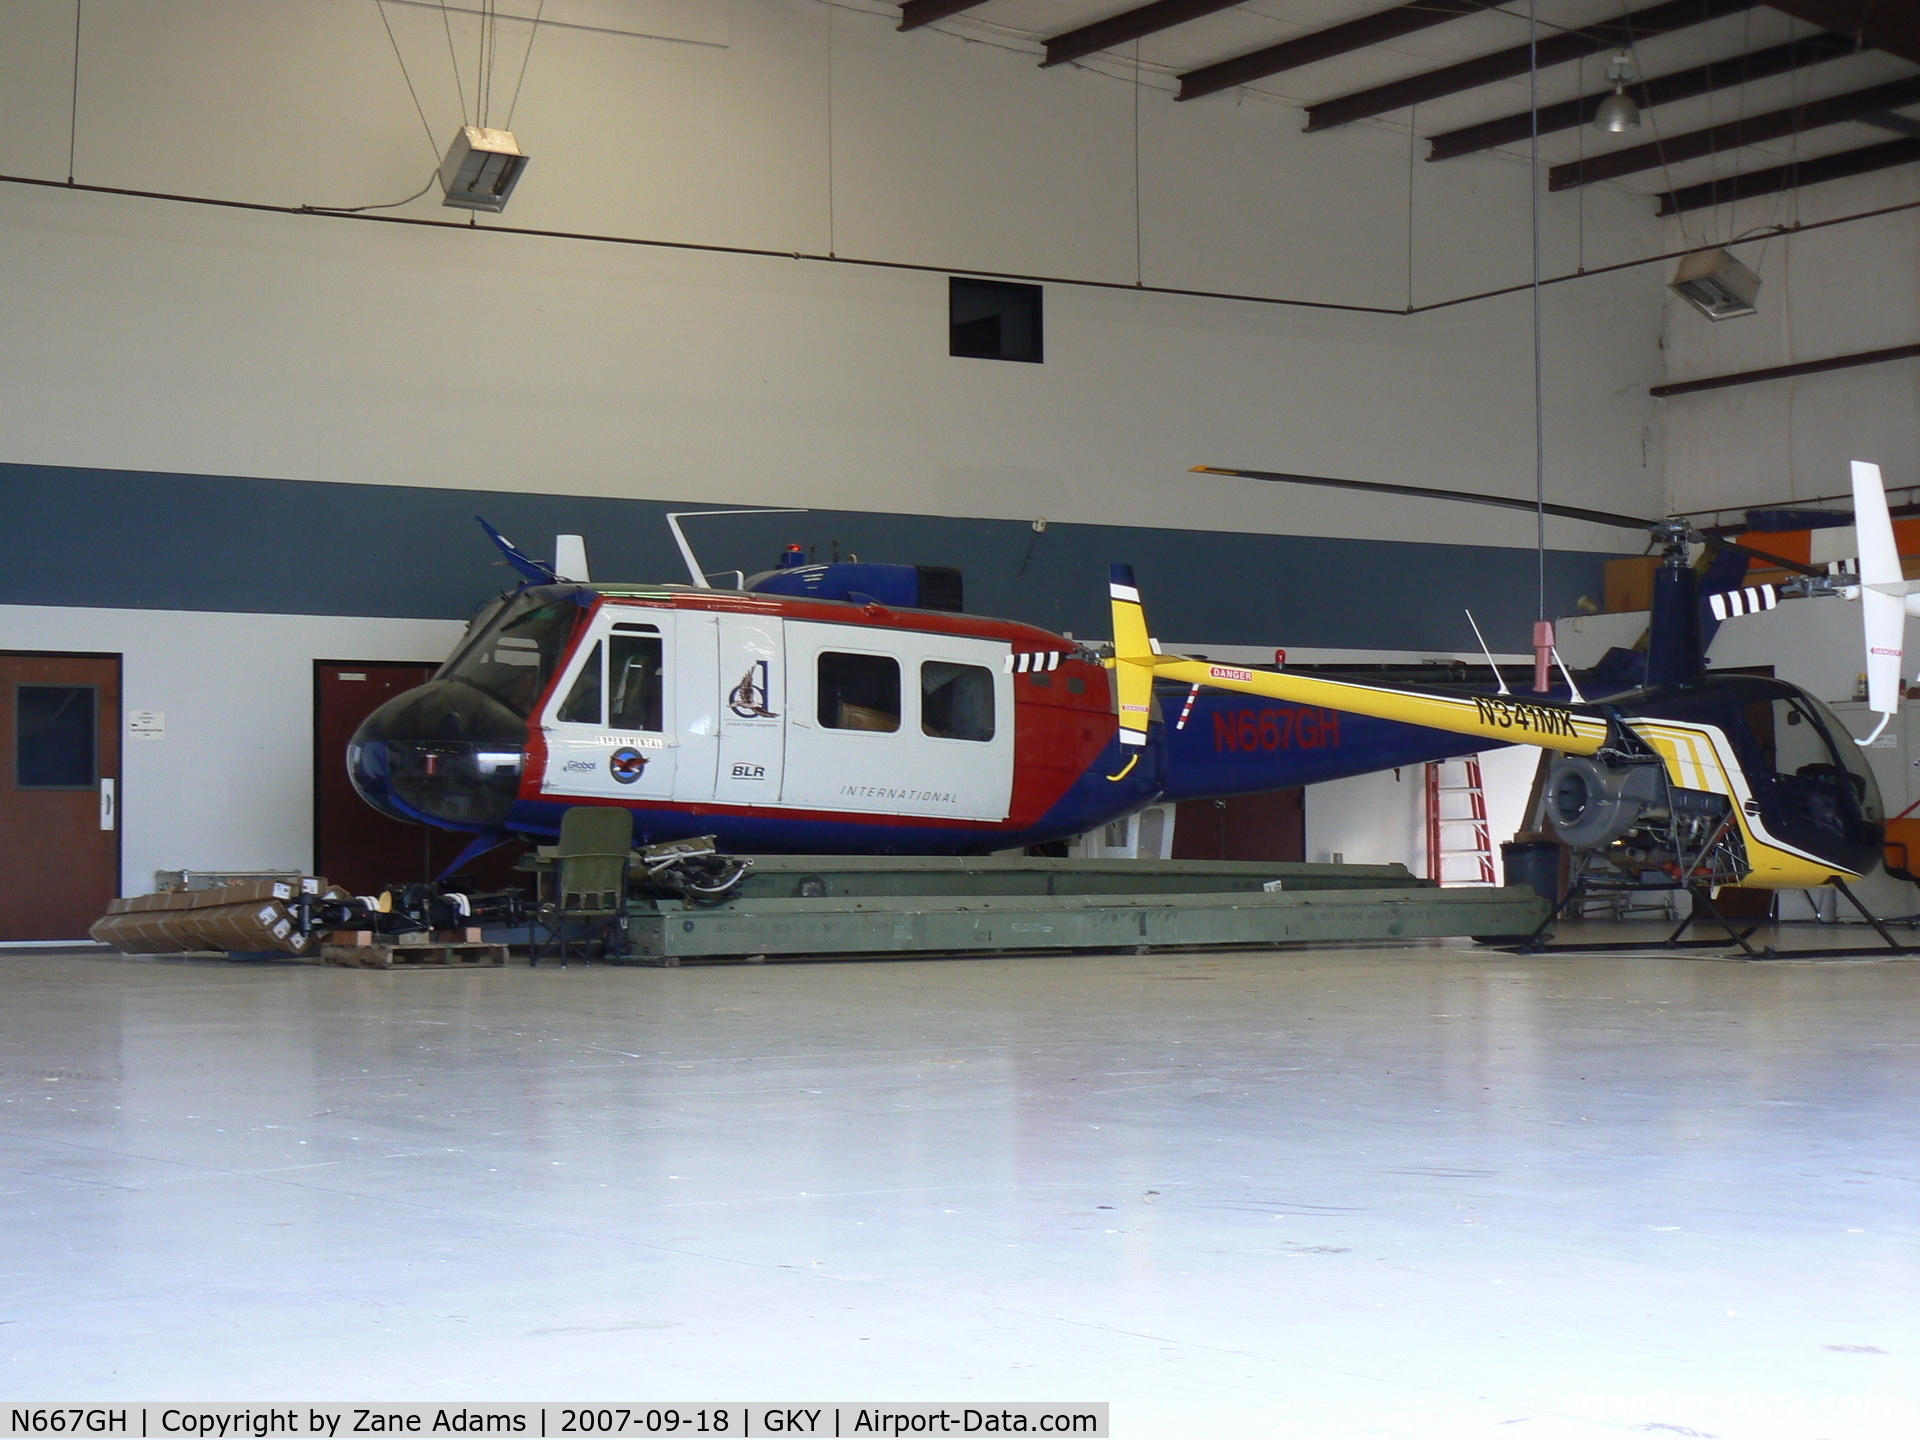 N667GH, 1969 Bell UH-1H C/N 69-15092, In hanger at Arlington, TX